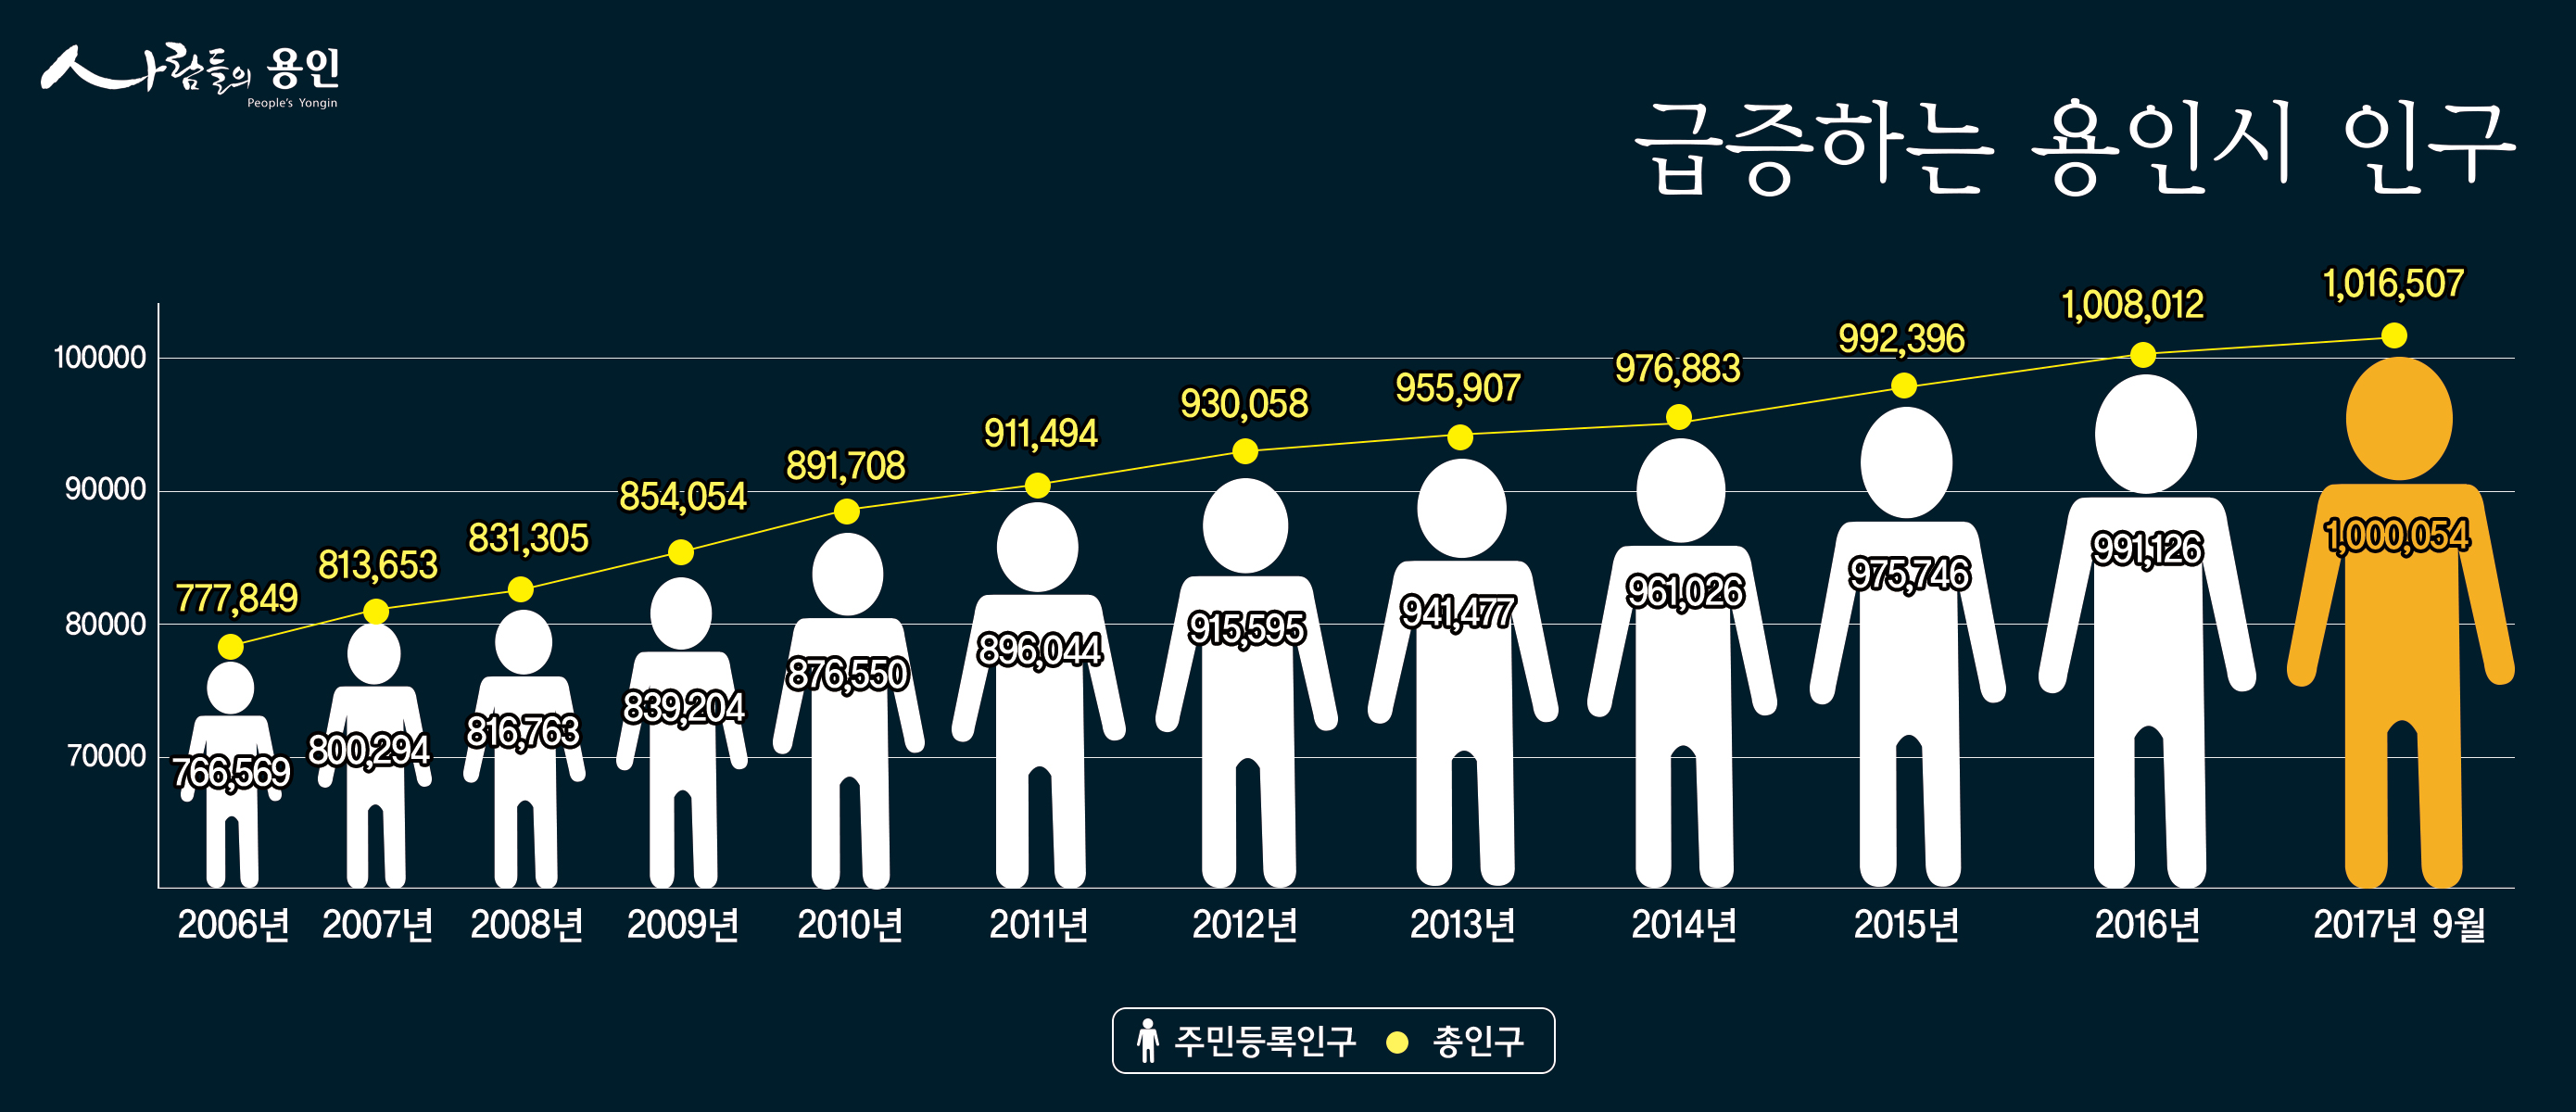 #용인시 인구 증가 추이